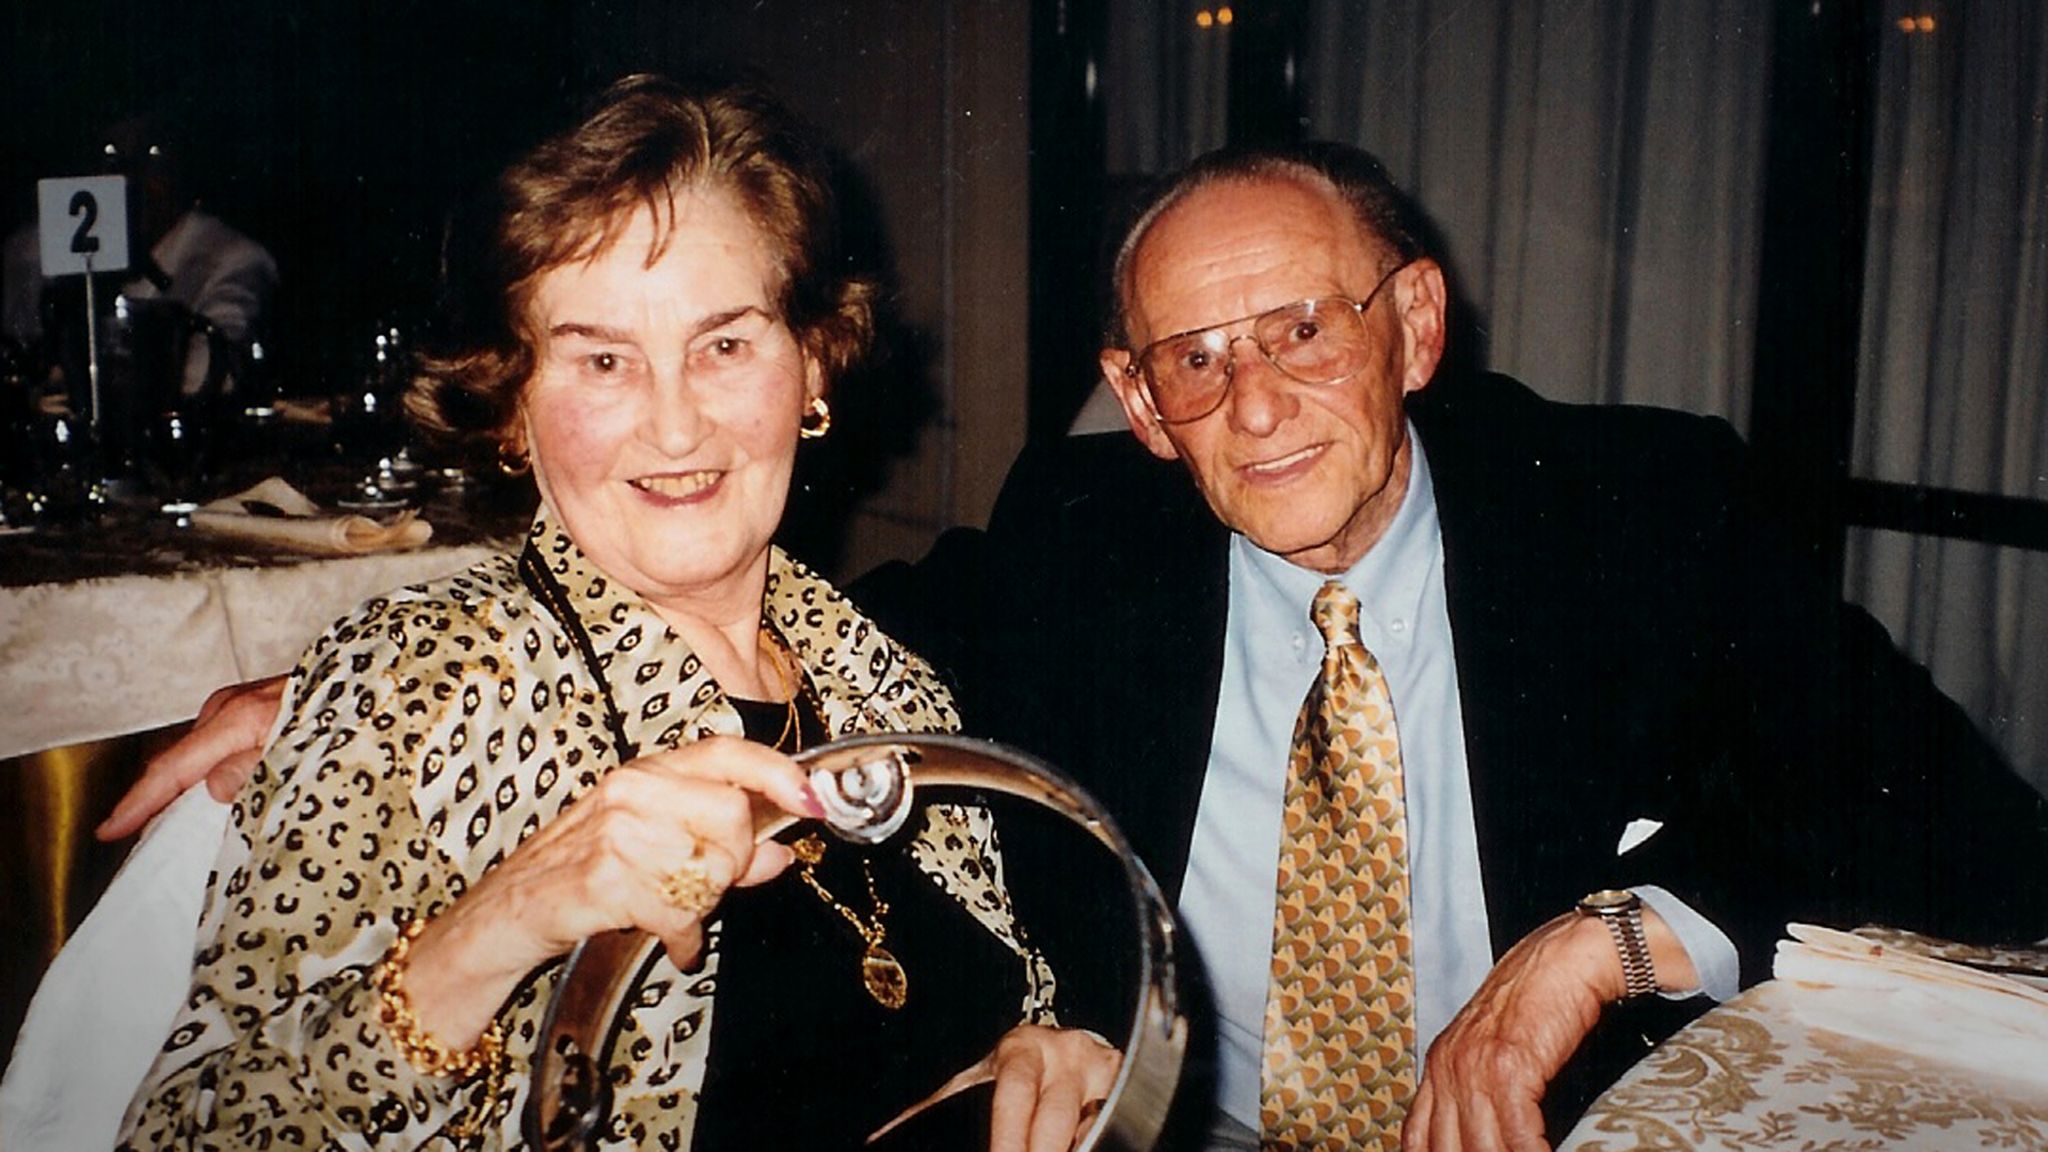 Photo of Gita and Lale Sokolov before Gita's death in 2003